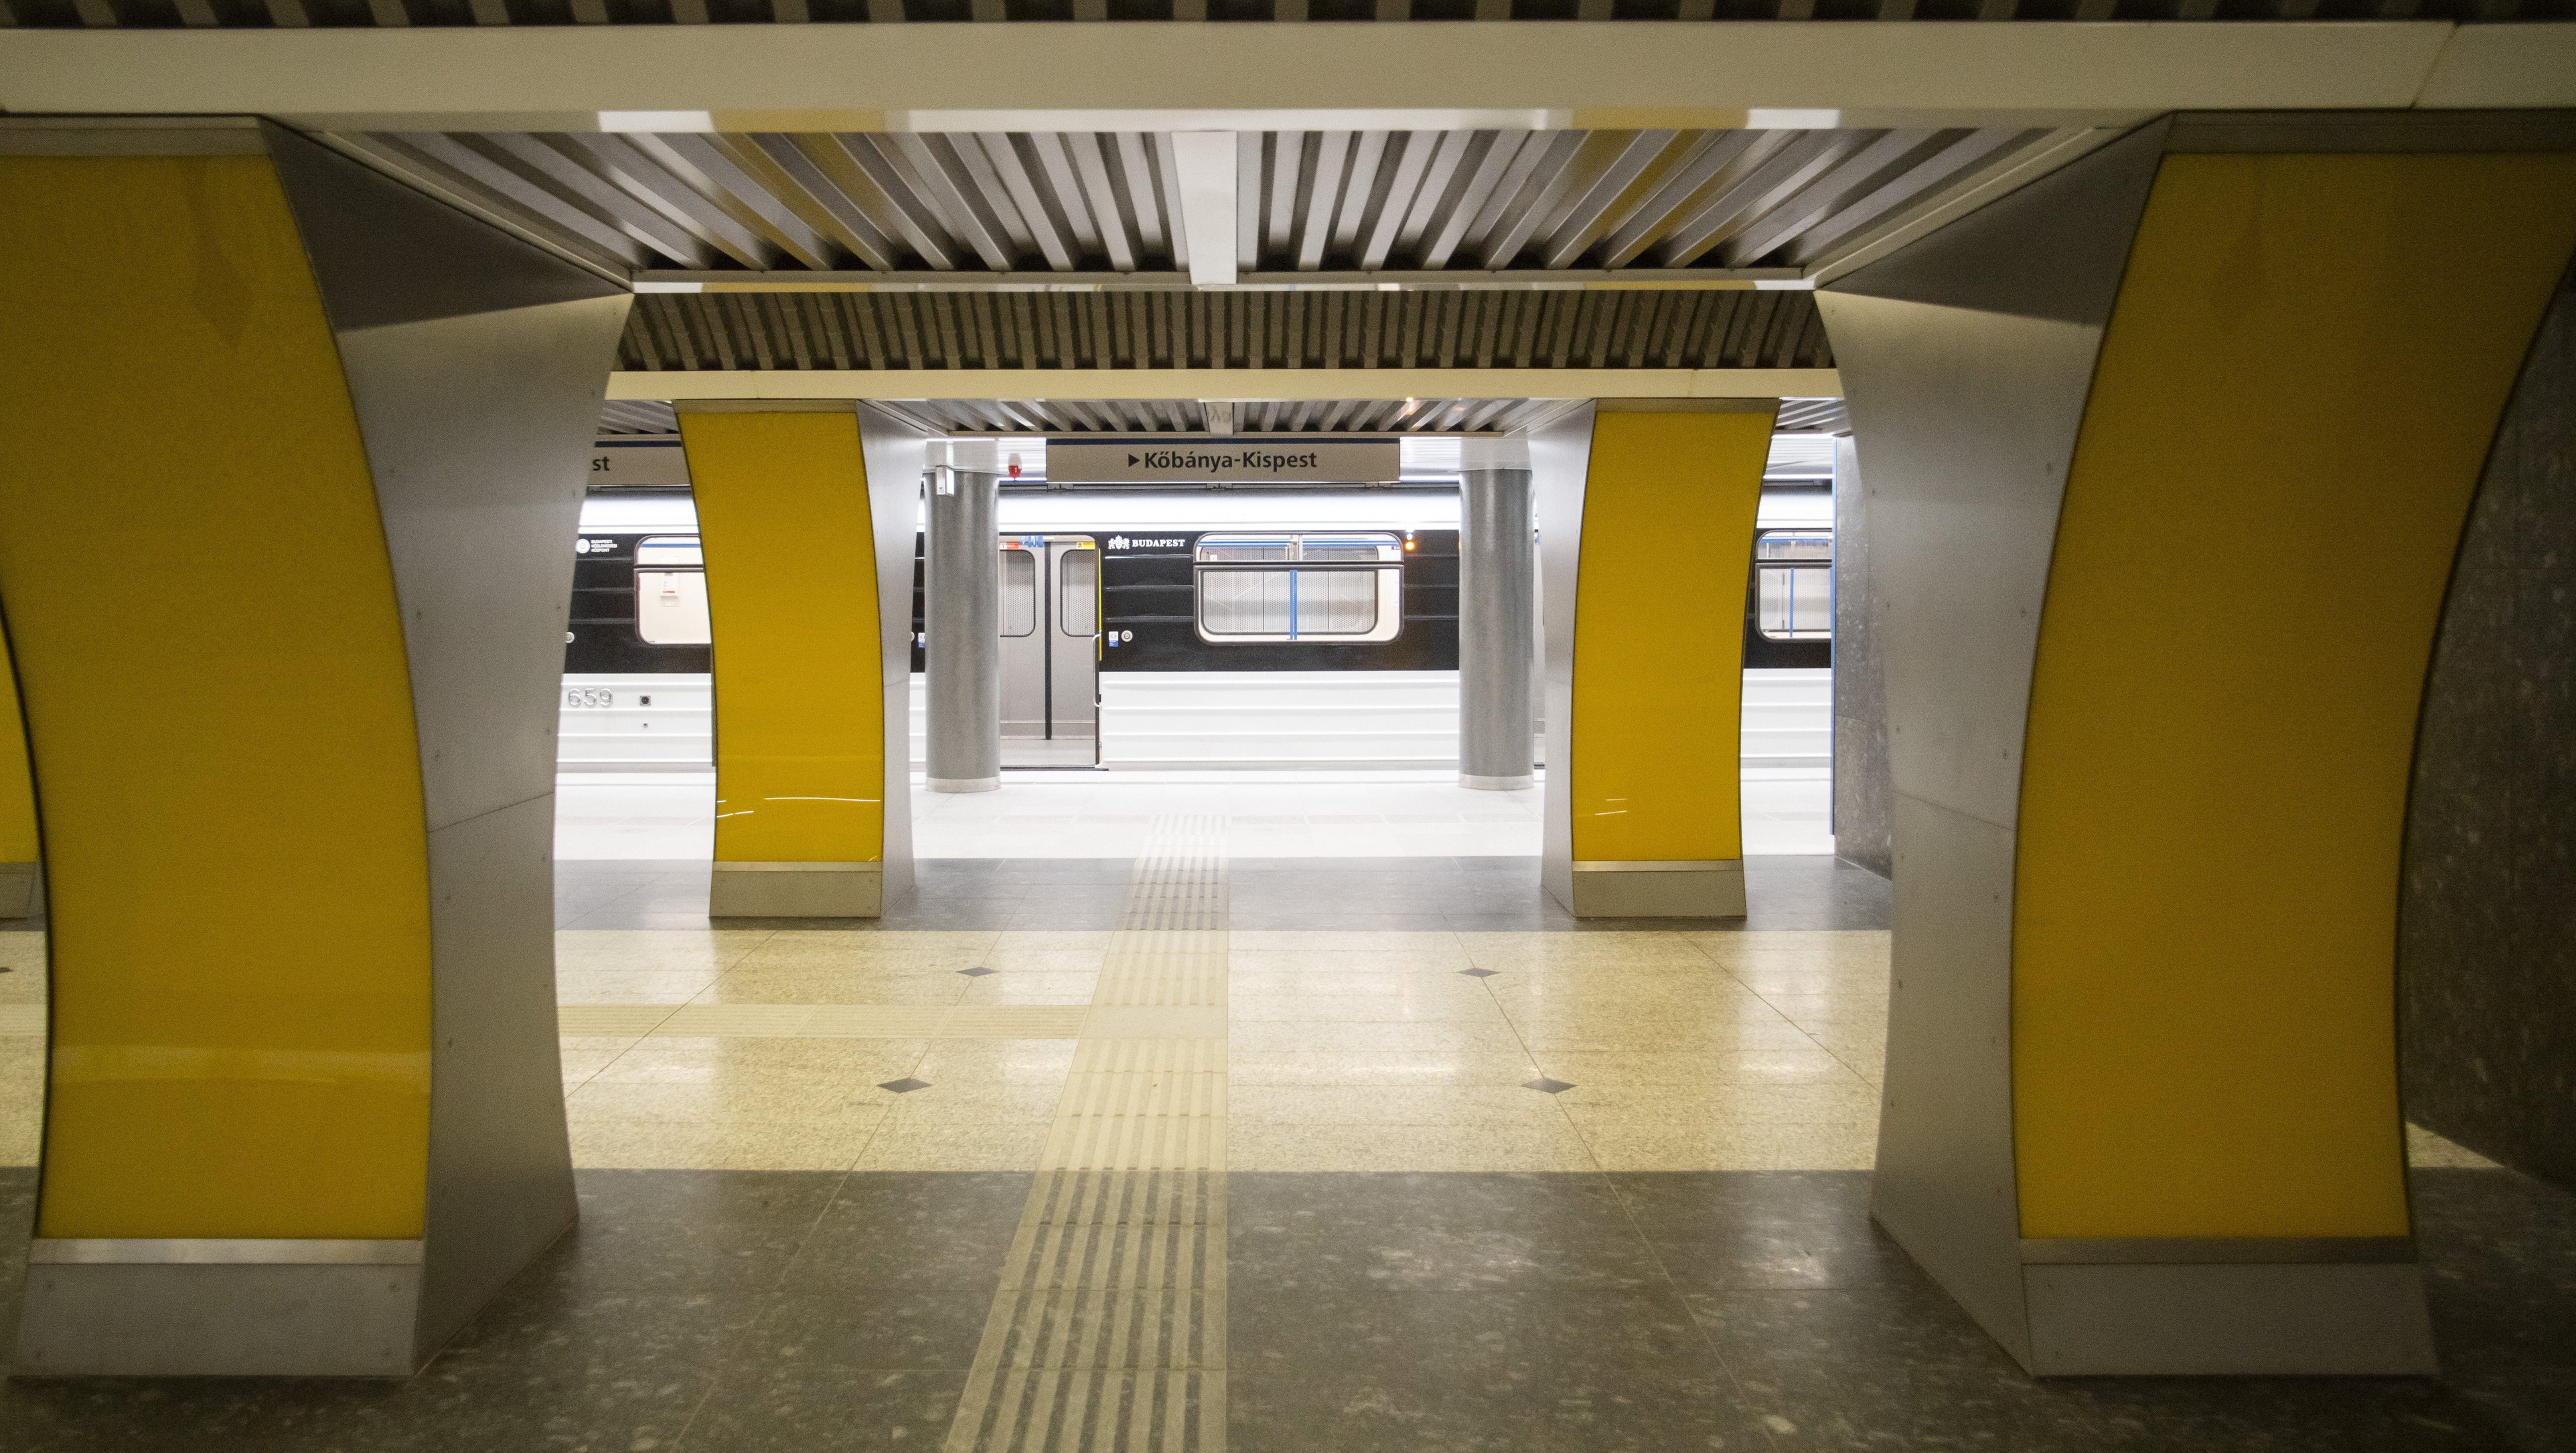 Hétfőtől újra jár a 3-as metró Kőbánya-Kispest és a Kálvin tér között